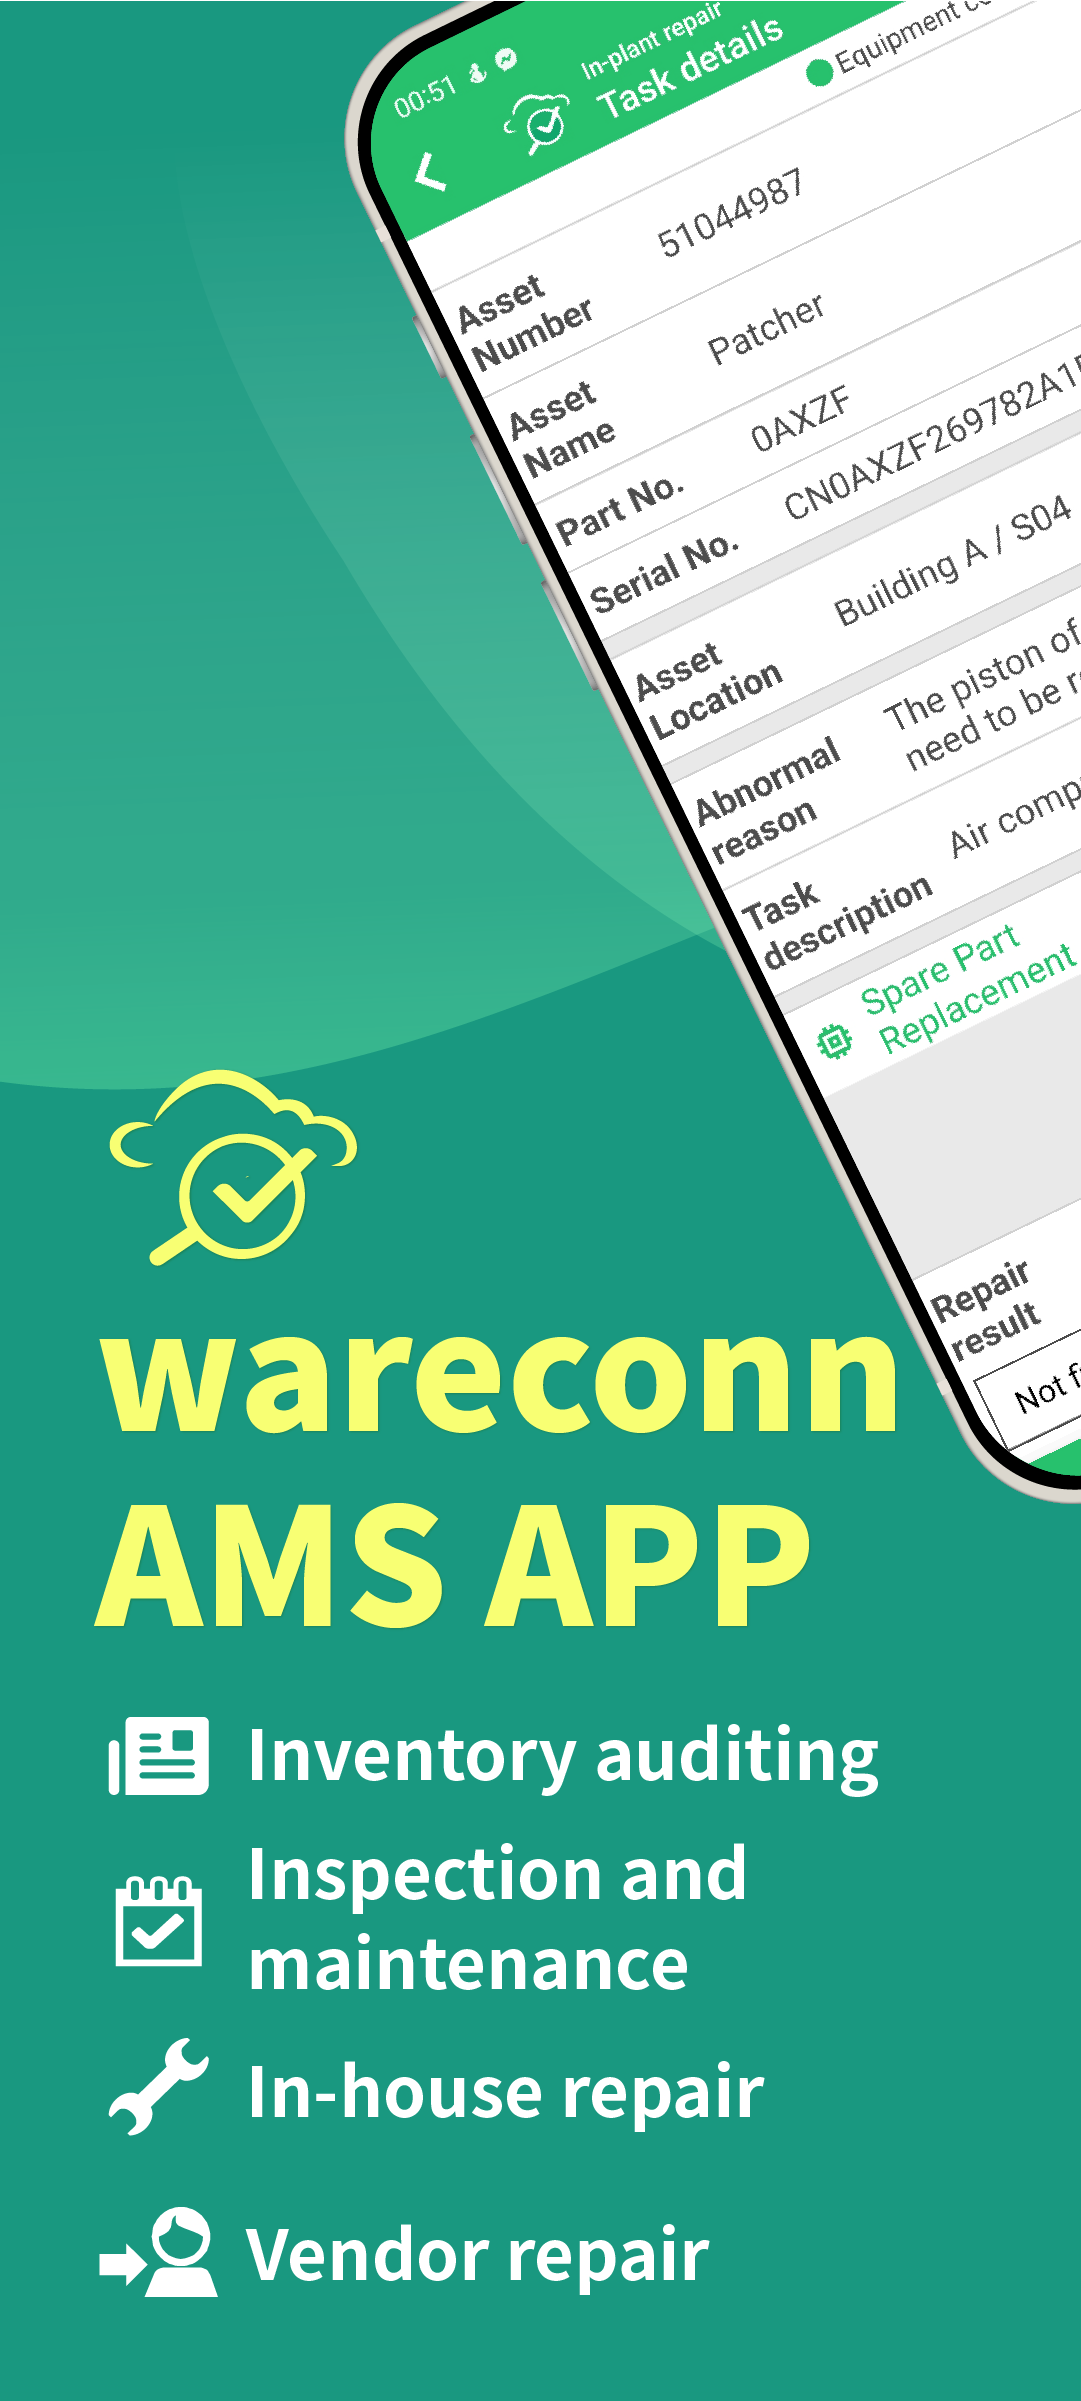 wareconn asset management app